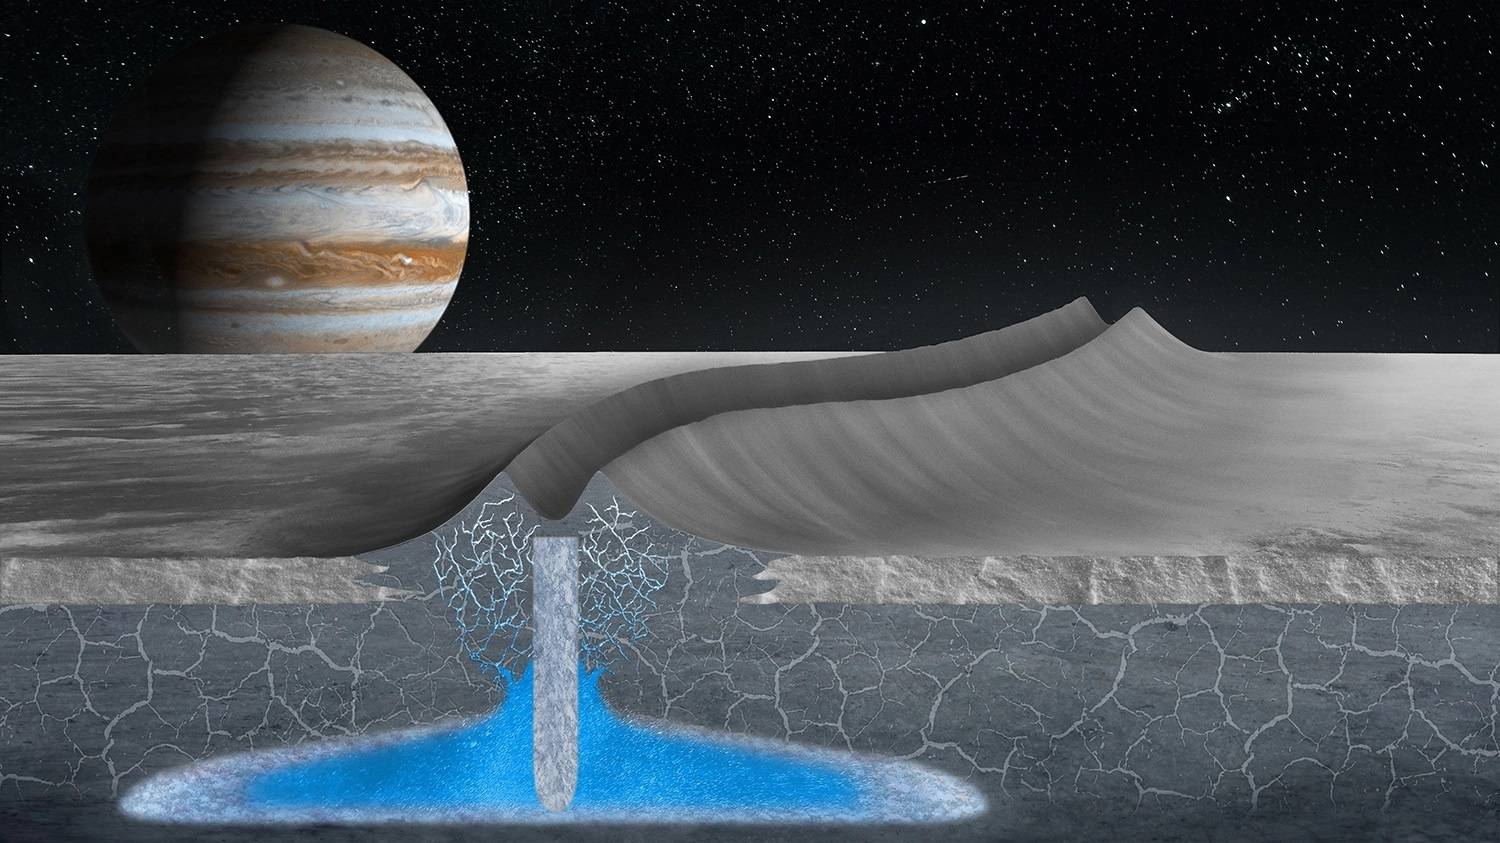 原创木卫二冰层下的浅层水可能使生命接近其表面